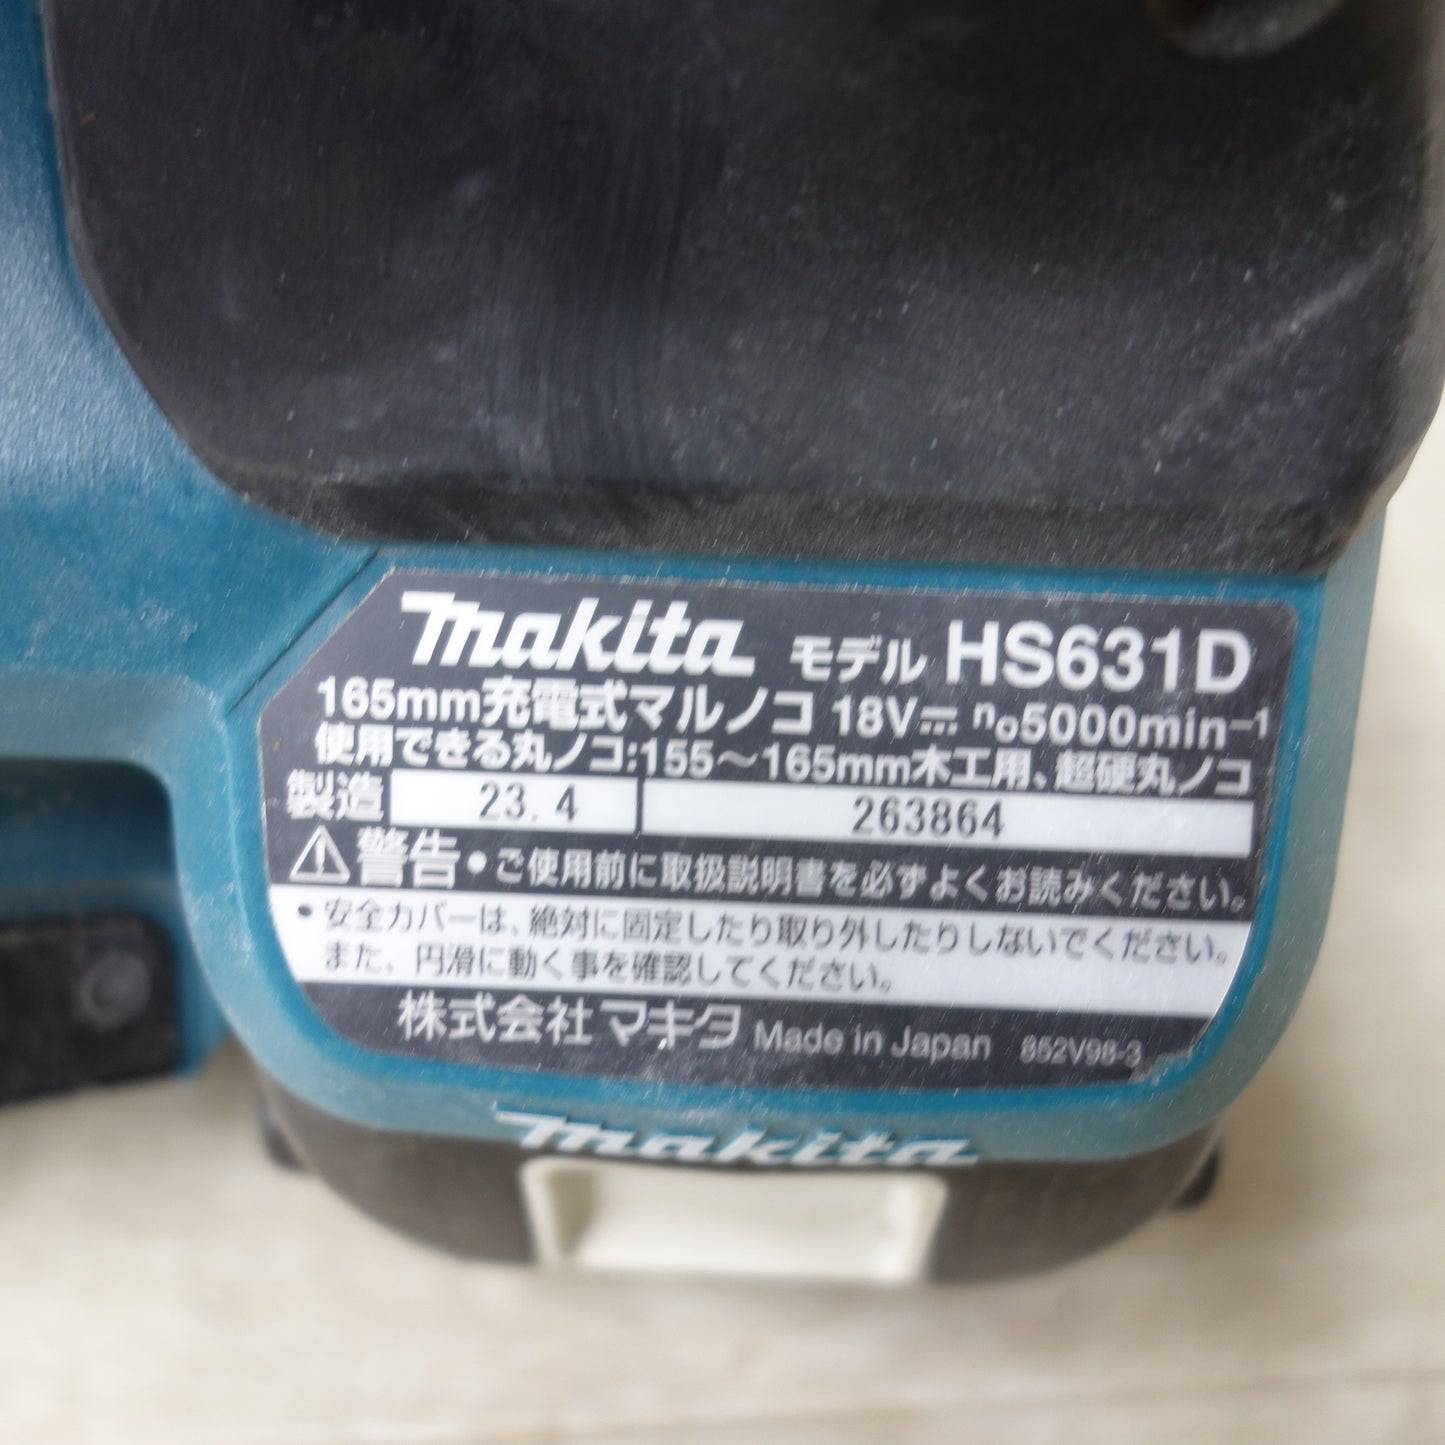 [送料無料] ◆makita マキタ 165mm 充電式マルノコ HS631D 18V BL1860B バッテリー2個付き 切断機 丸のこ 電動工具◆